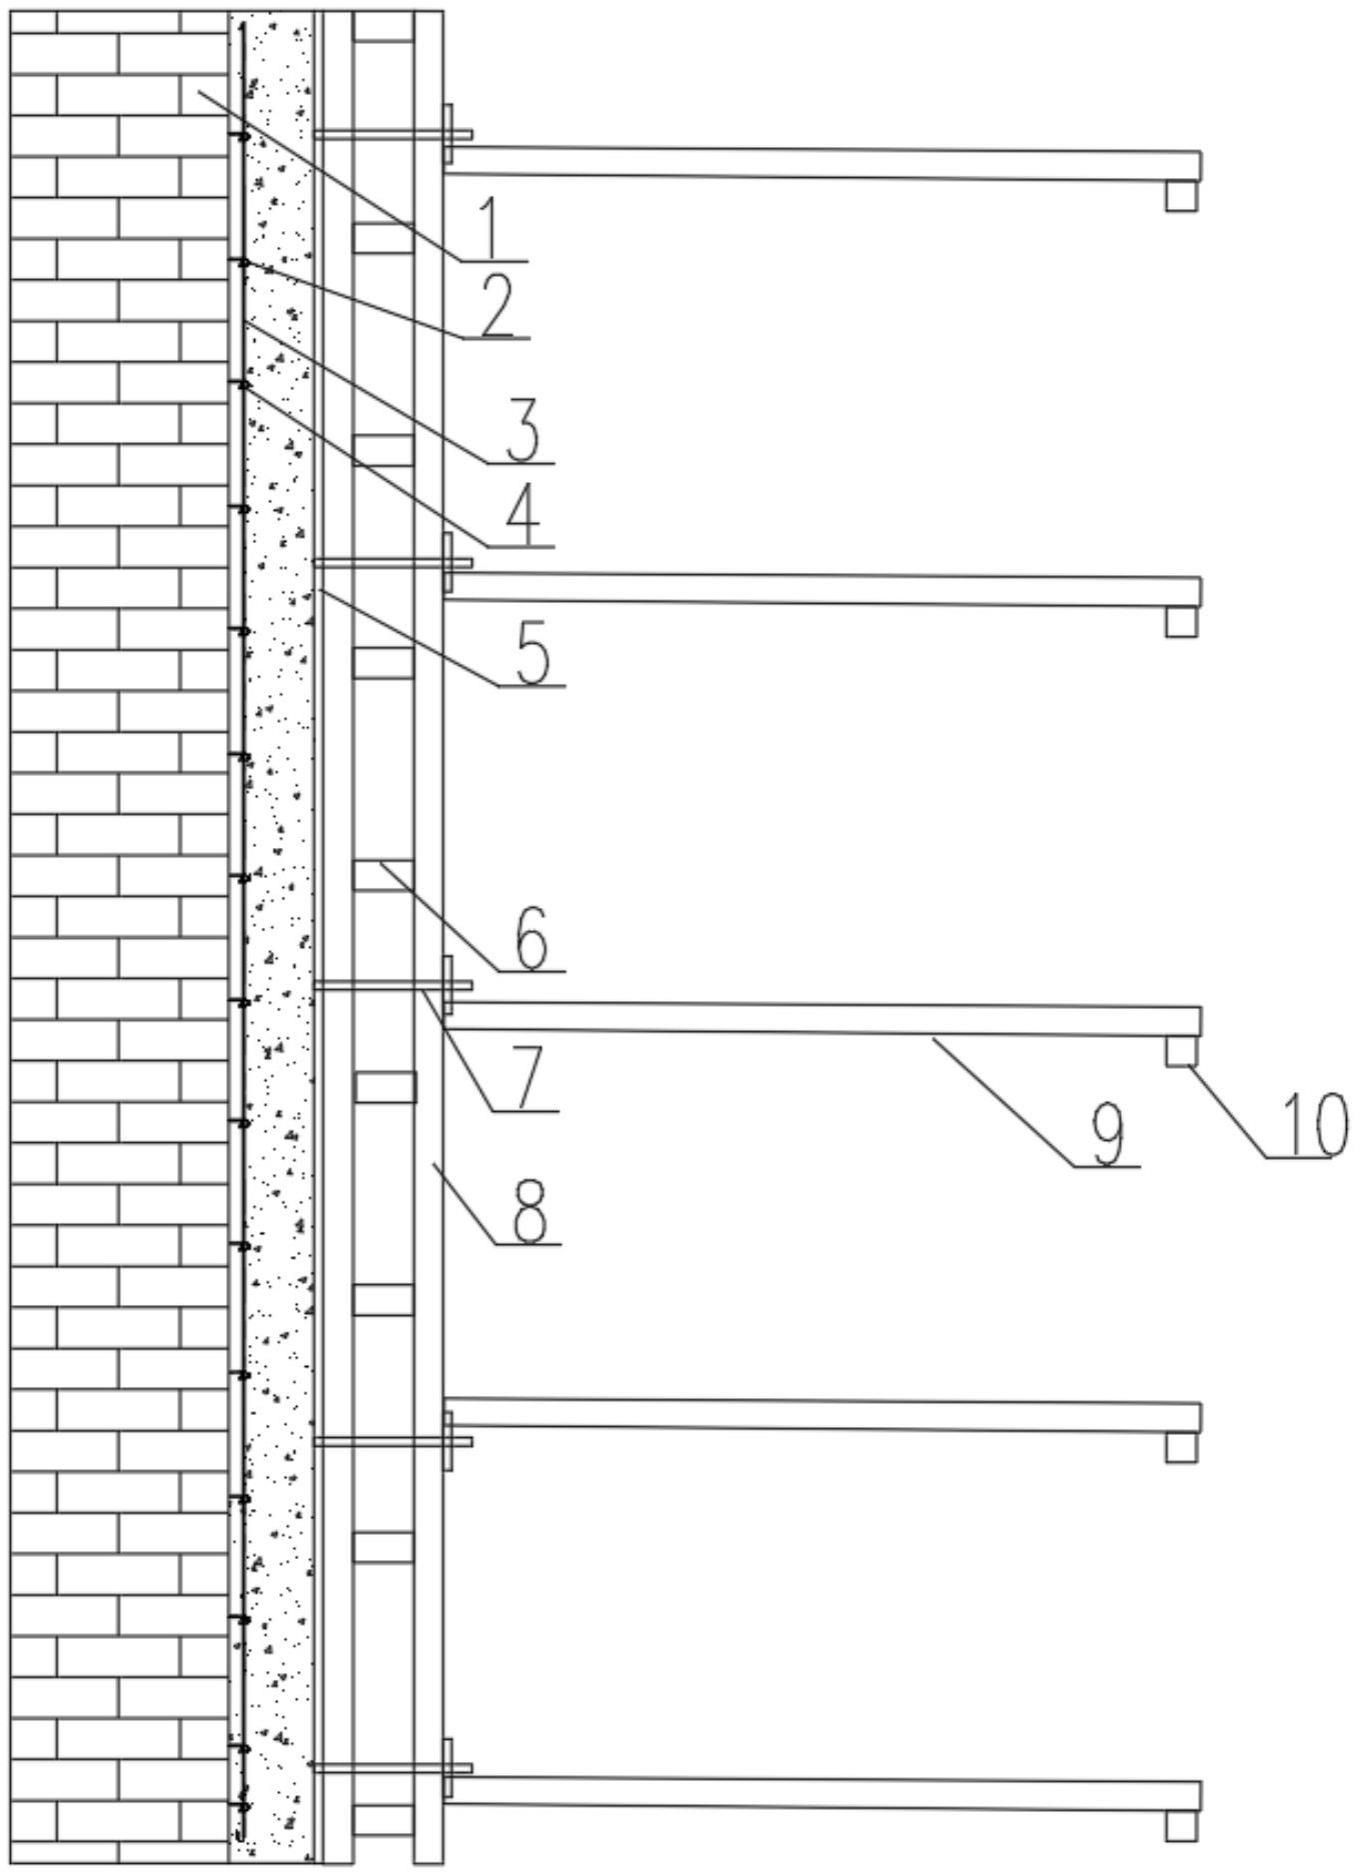 既有砖砌体建筑物增设单侧内墙及内墙模板体系的制作方法